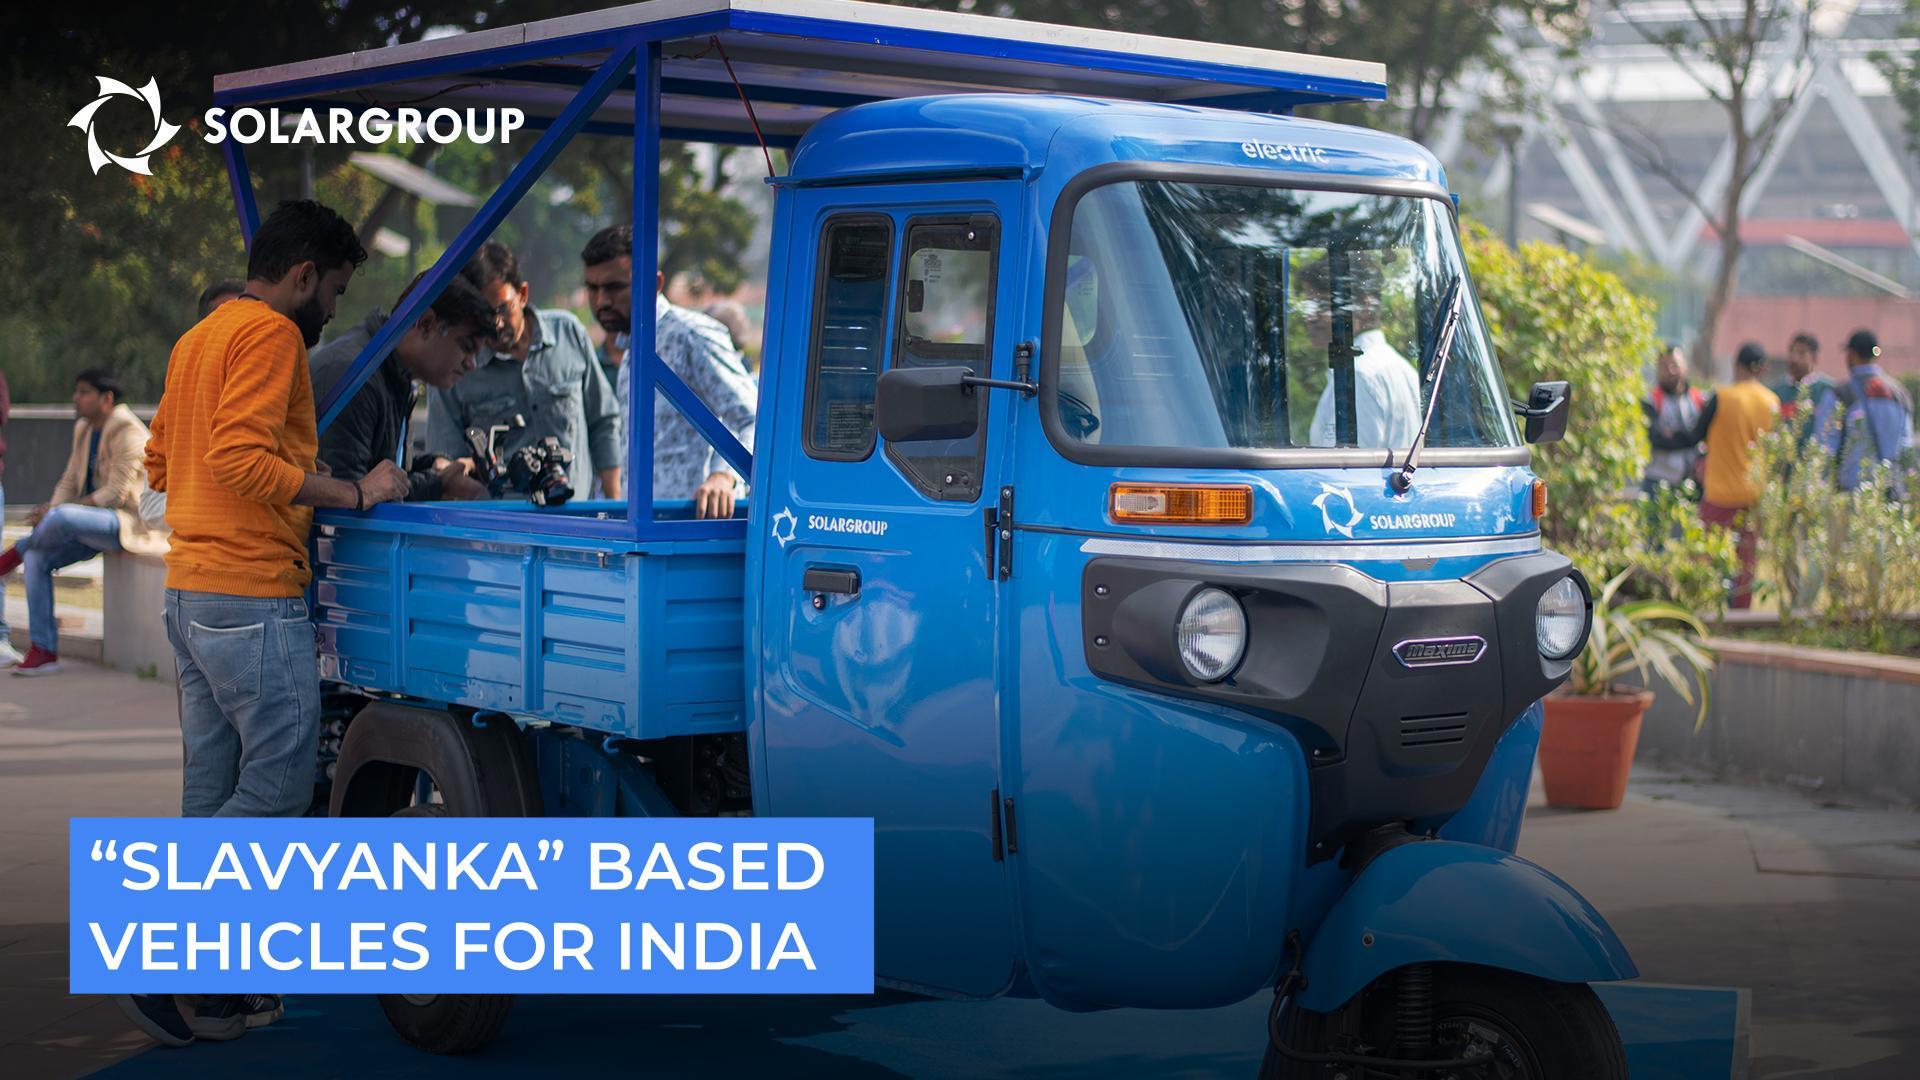 "Slavyanka" based vehicles for India